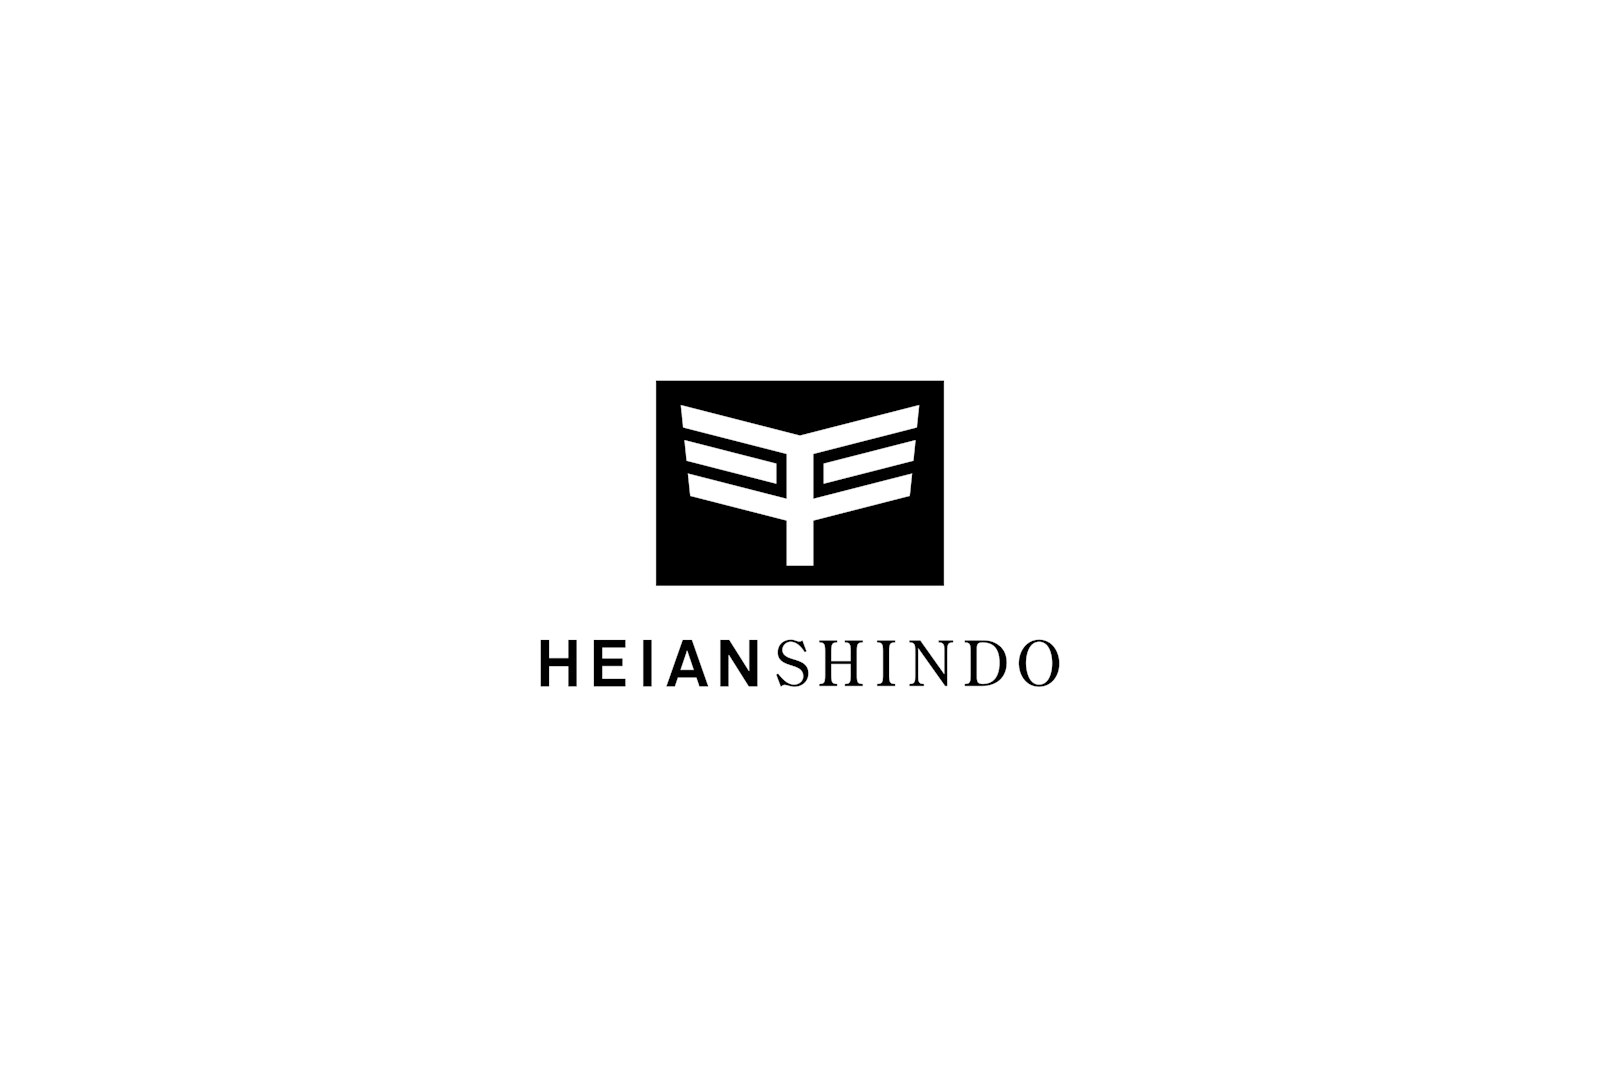 Heian Shindo